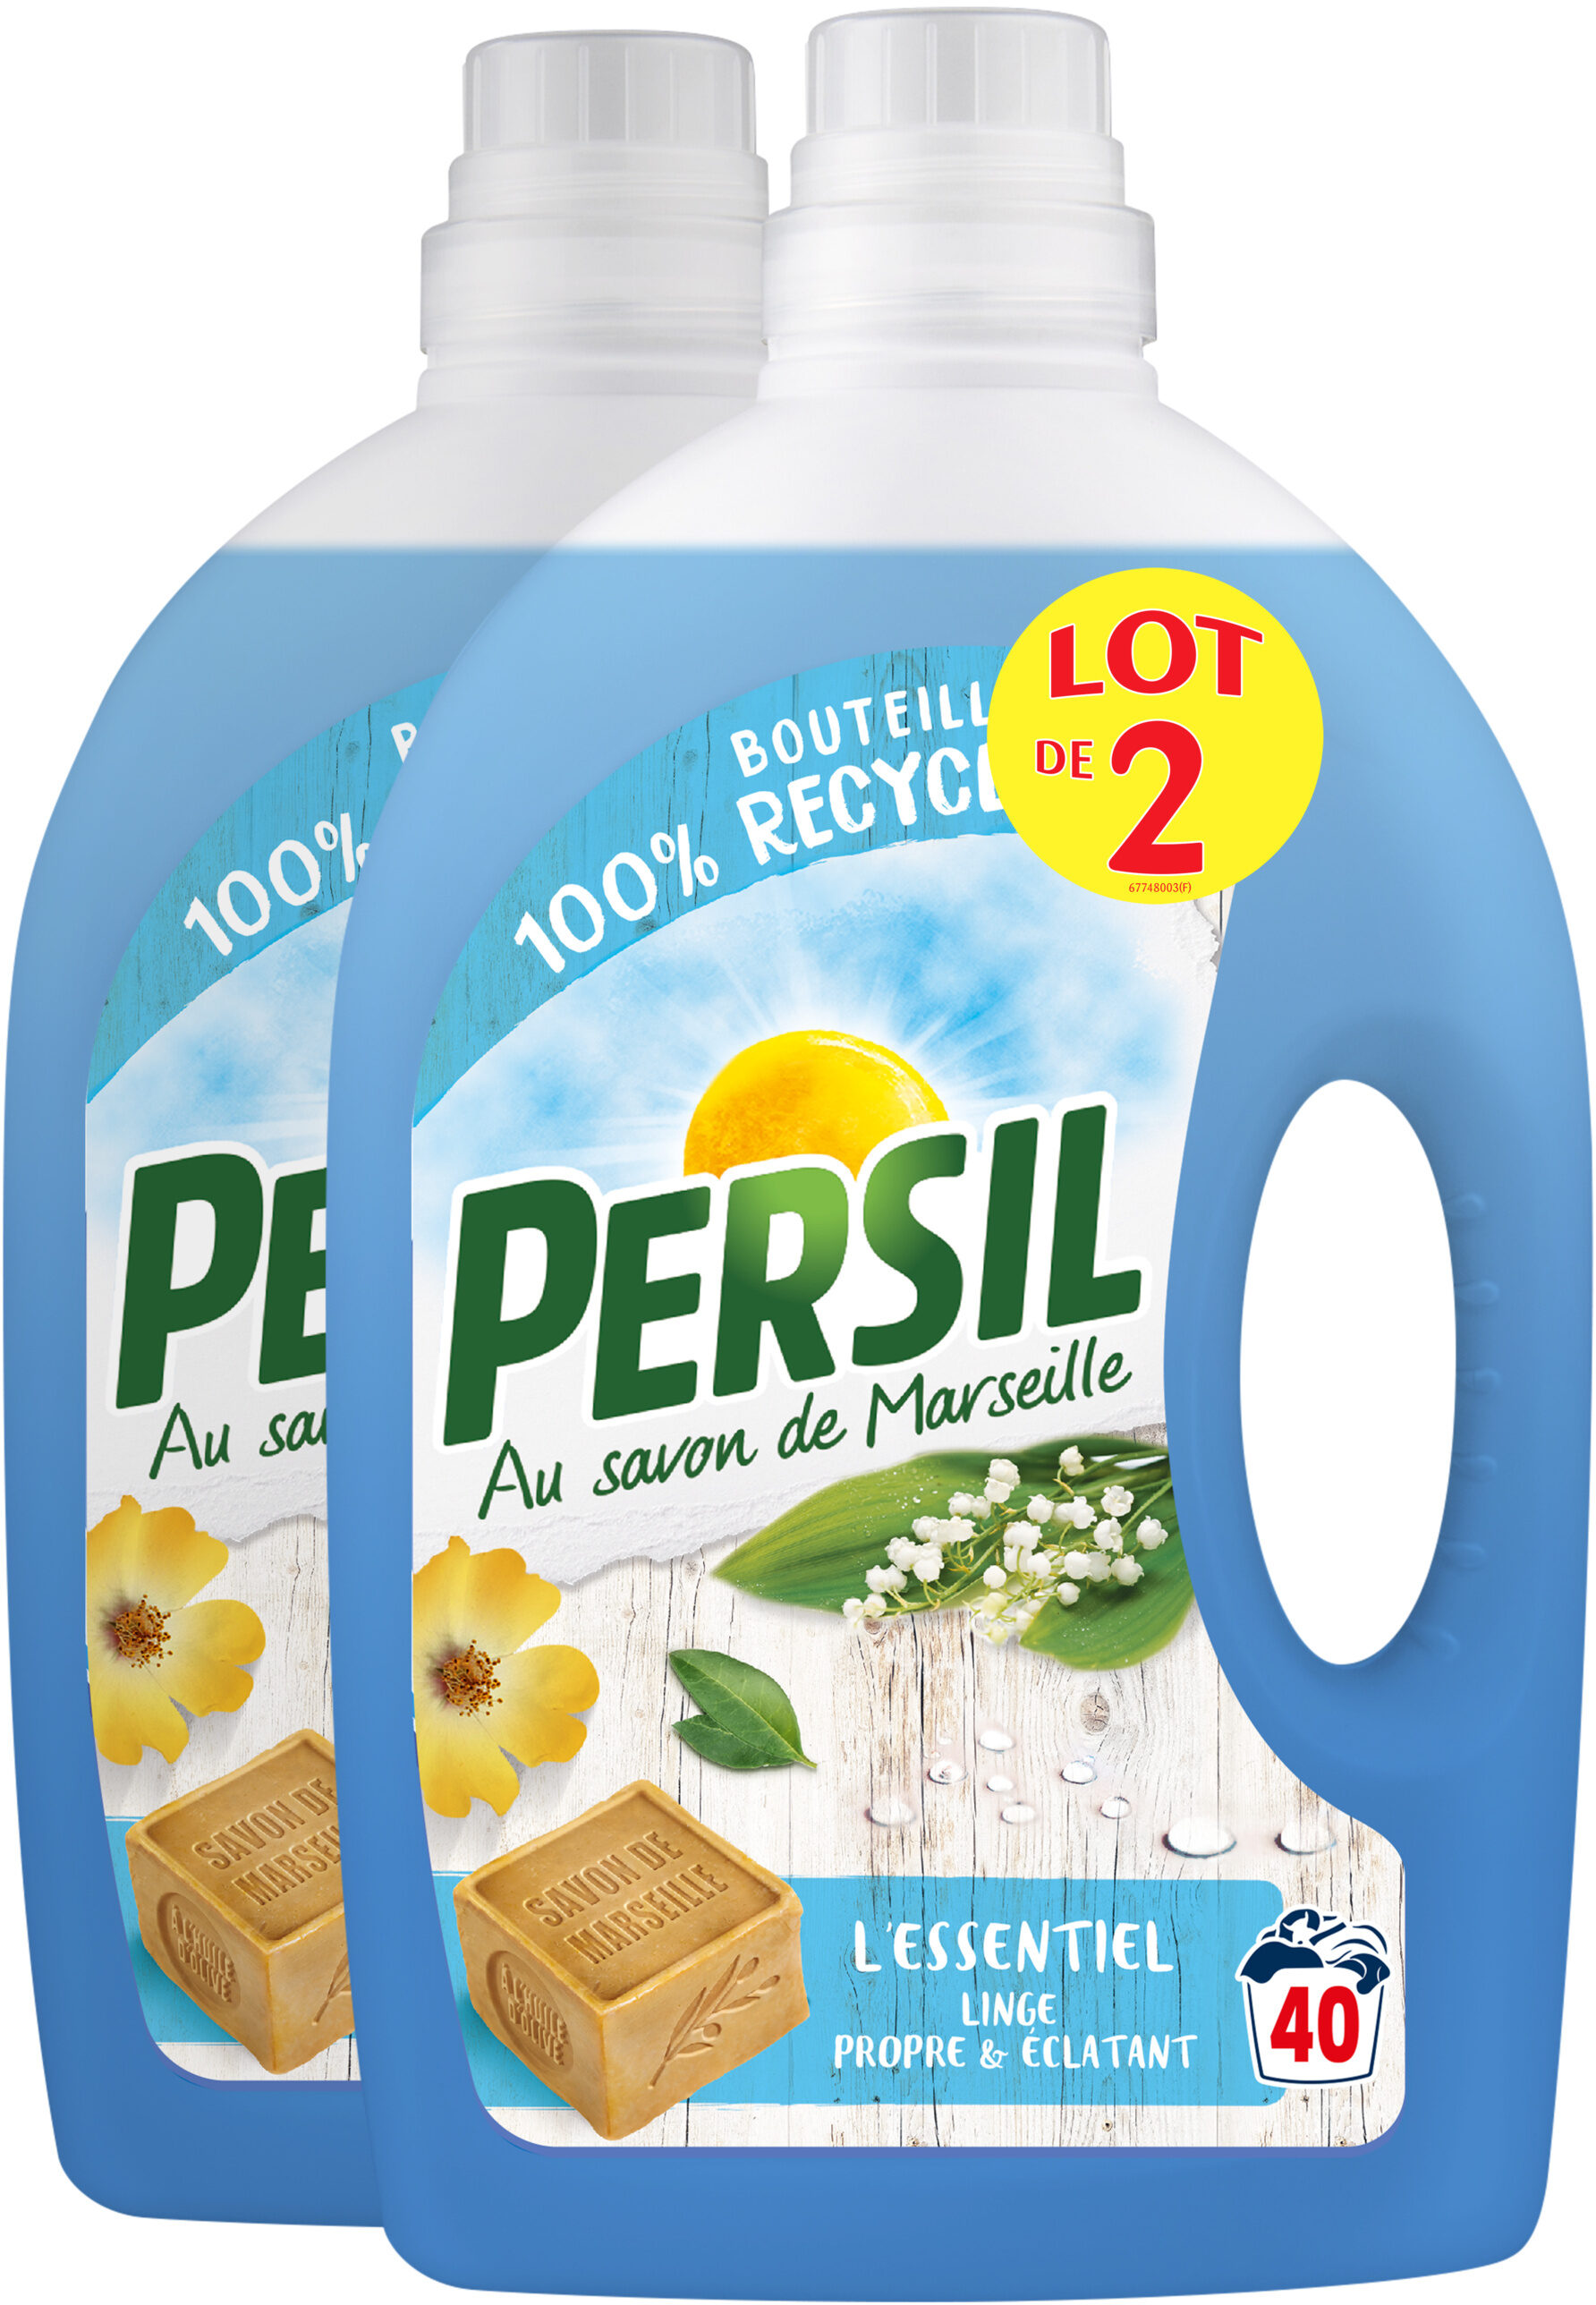 Persil Lessive Liquide l'Essentiel 2l 40 Lavages Lot de 2 - Tuote - fr